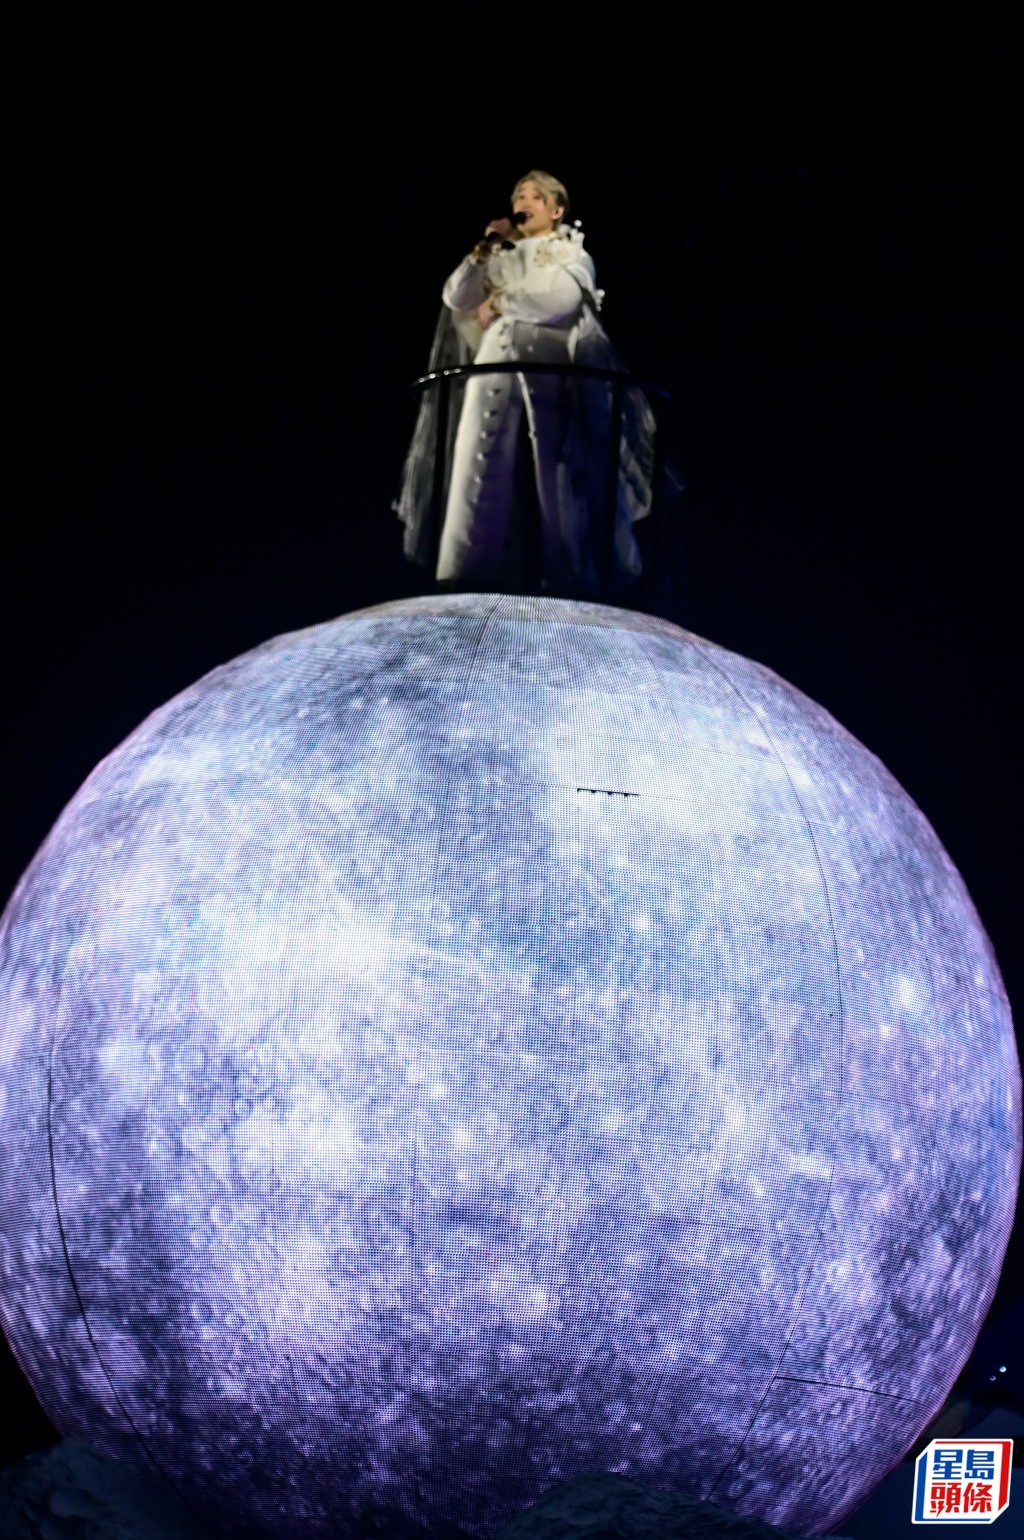 自称是小王子后就走到台侧的「月球」上演唱。